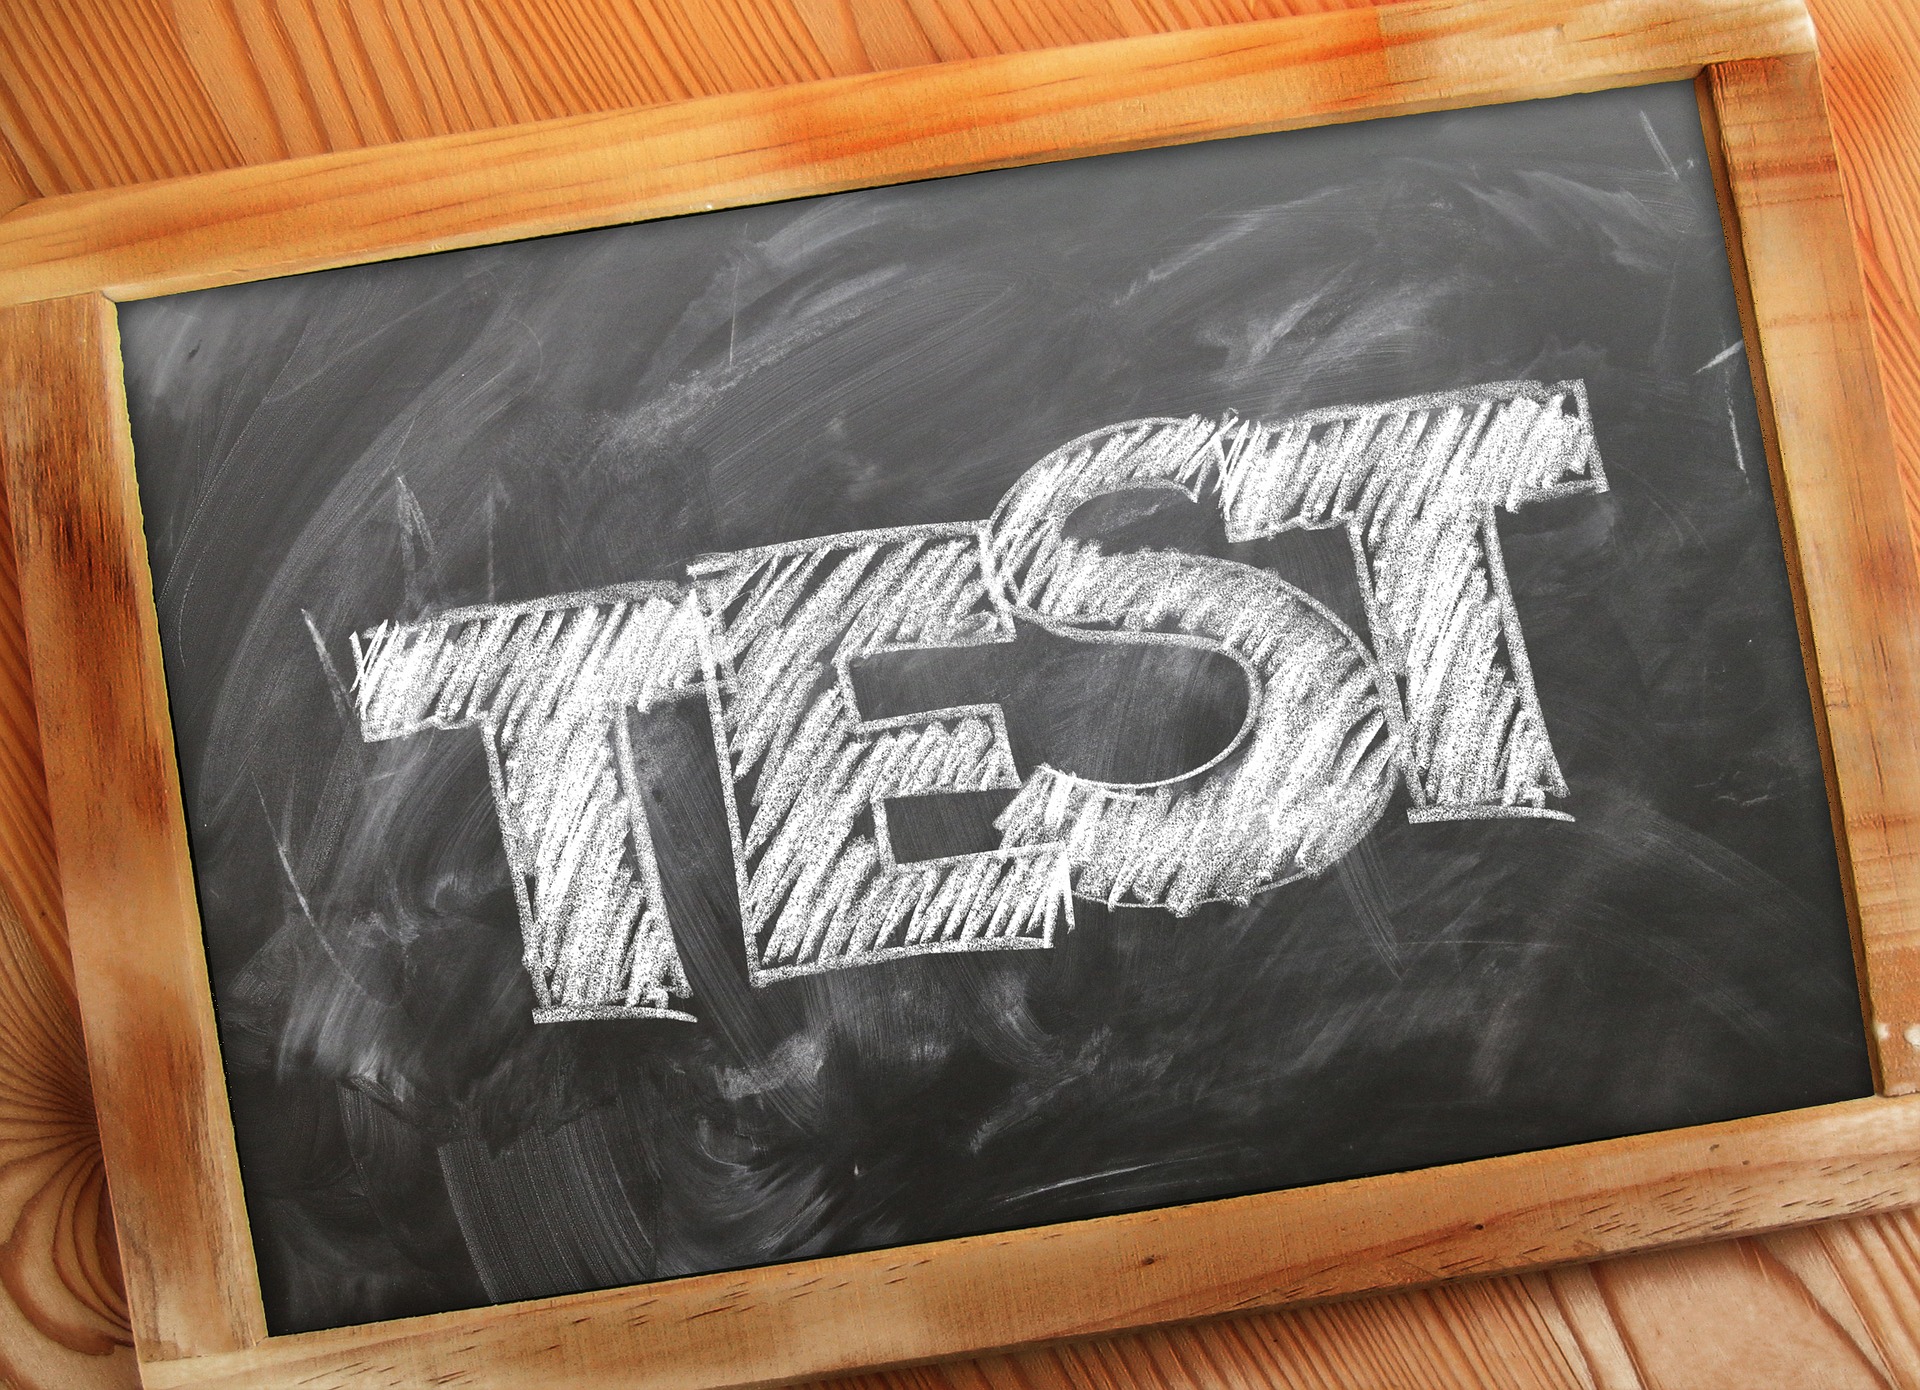 Tabliczka z napisem: "test". Fot.: Pixabay